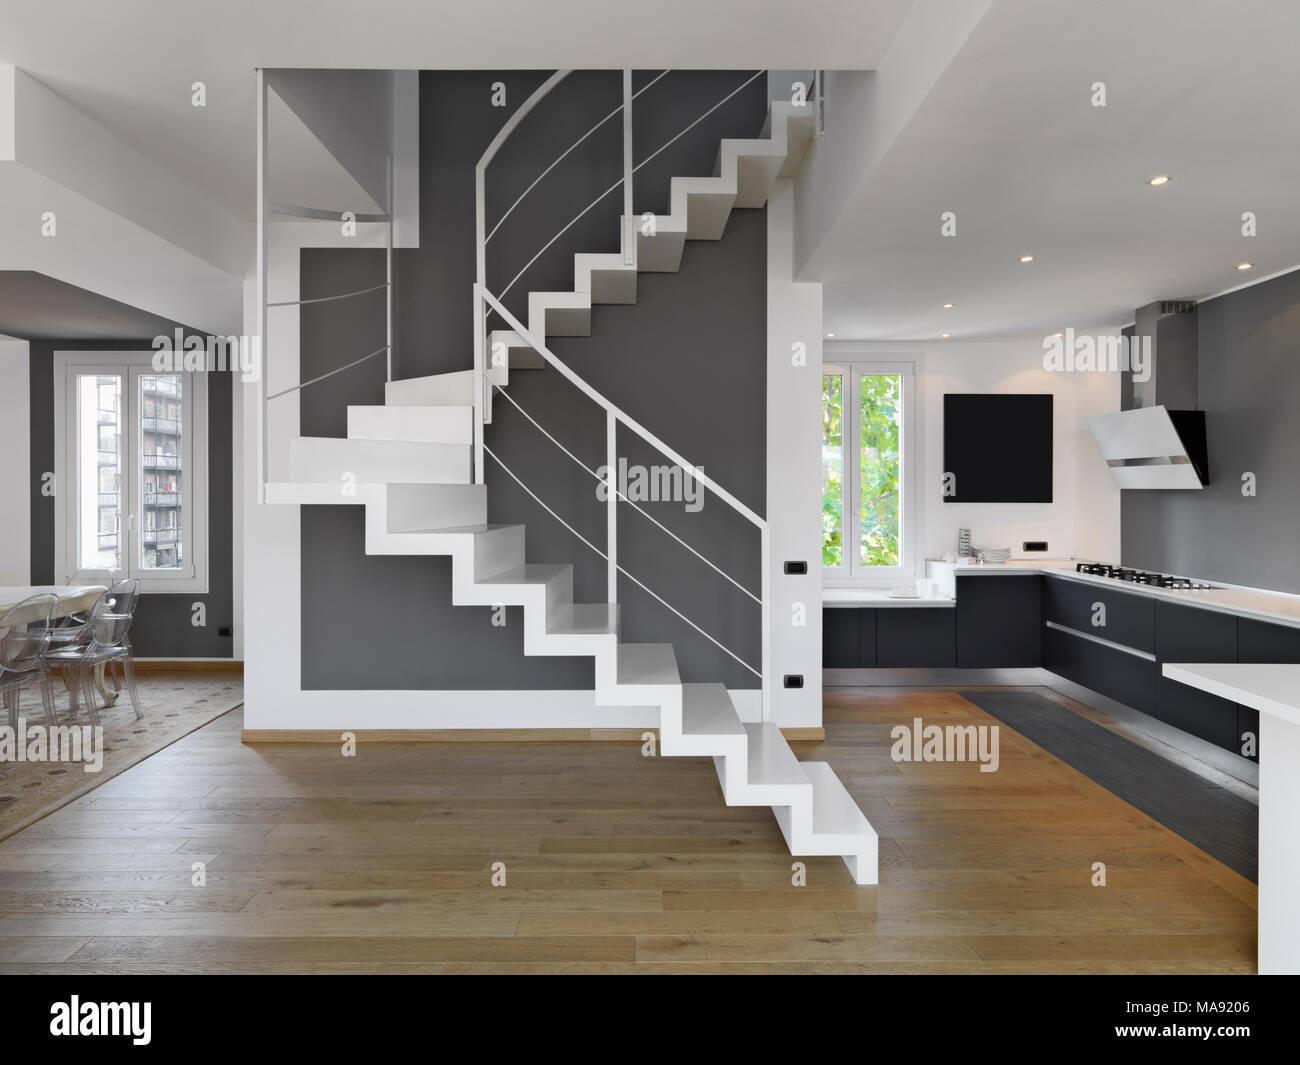 Fotografías de interior de un moderno apartamento con vistas a la cocina y el comedor en primer plano la escalera wjose piso está hecho de madera Foto de stock